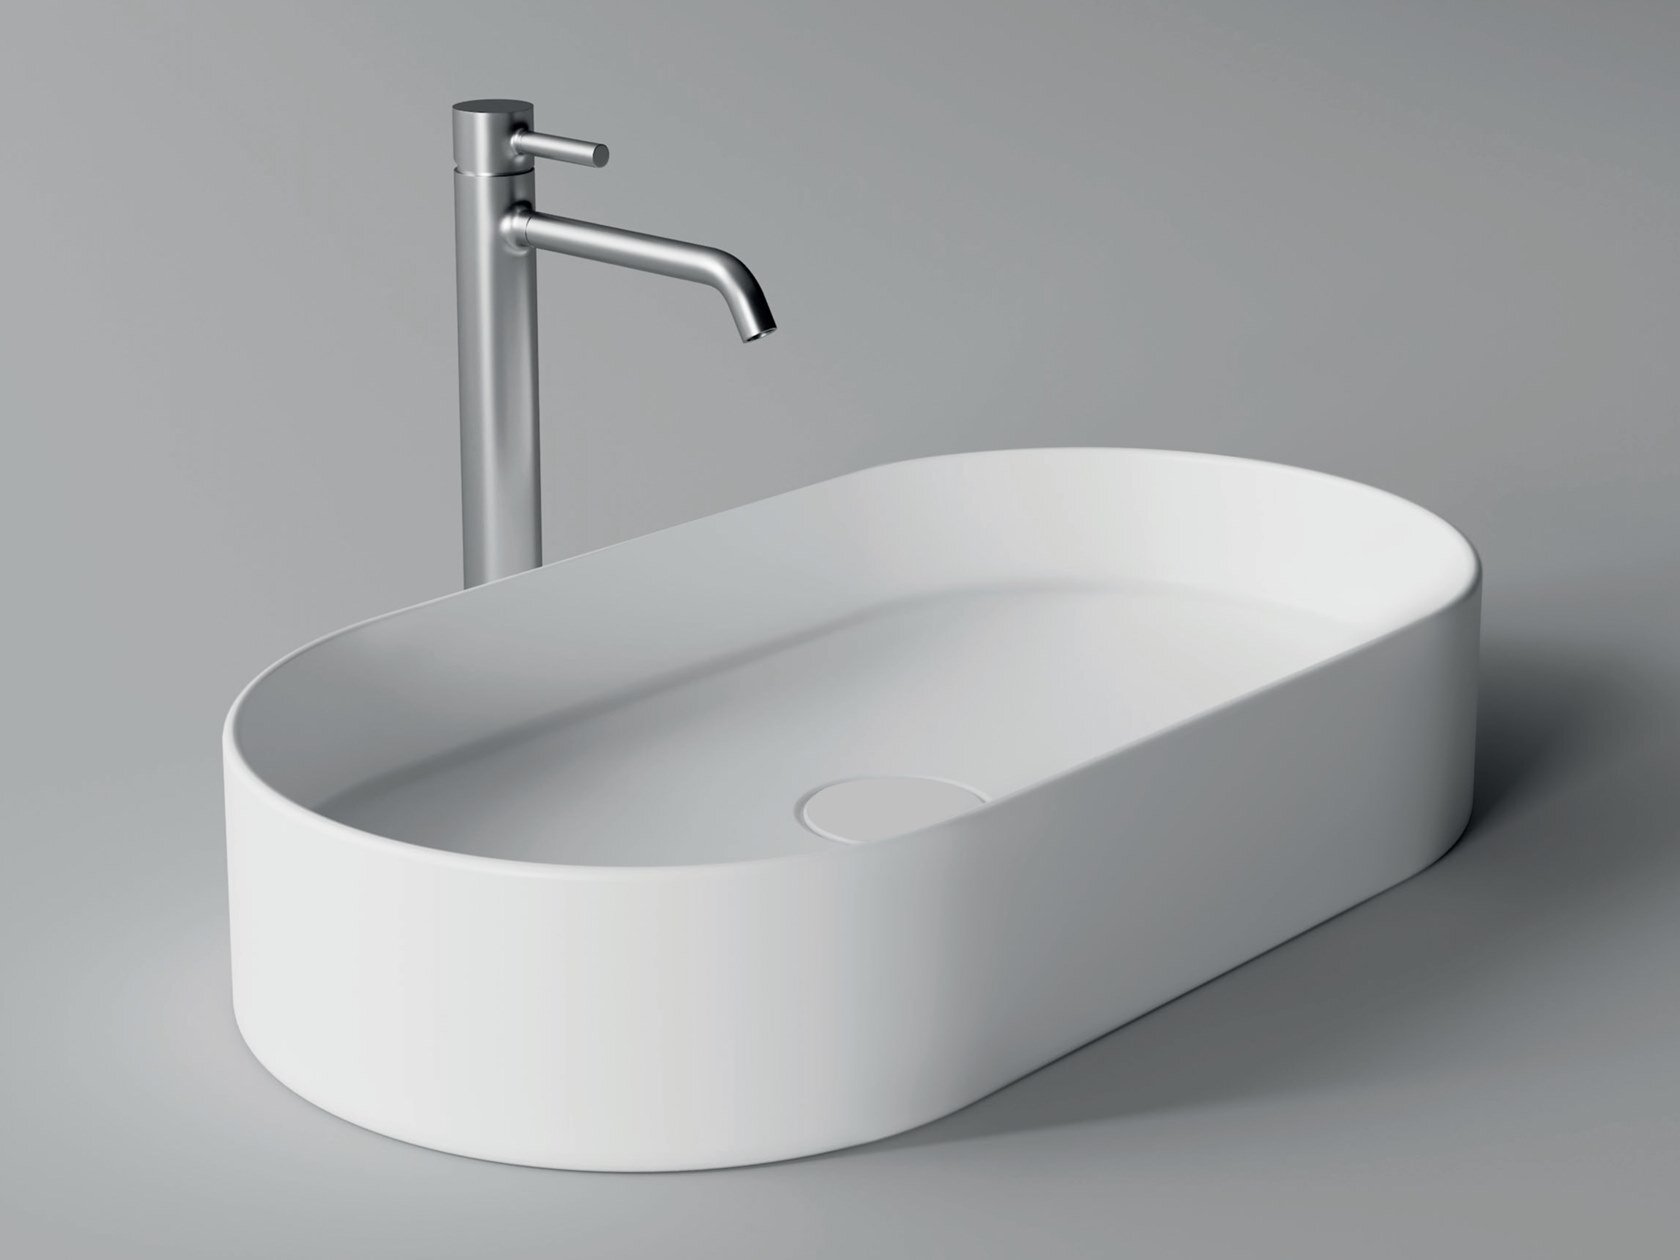 2b_HIDE-Oval-washbasin-Alice-Ceramica-364909-relb361e843.jpeg